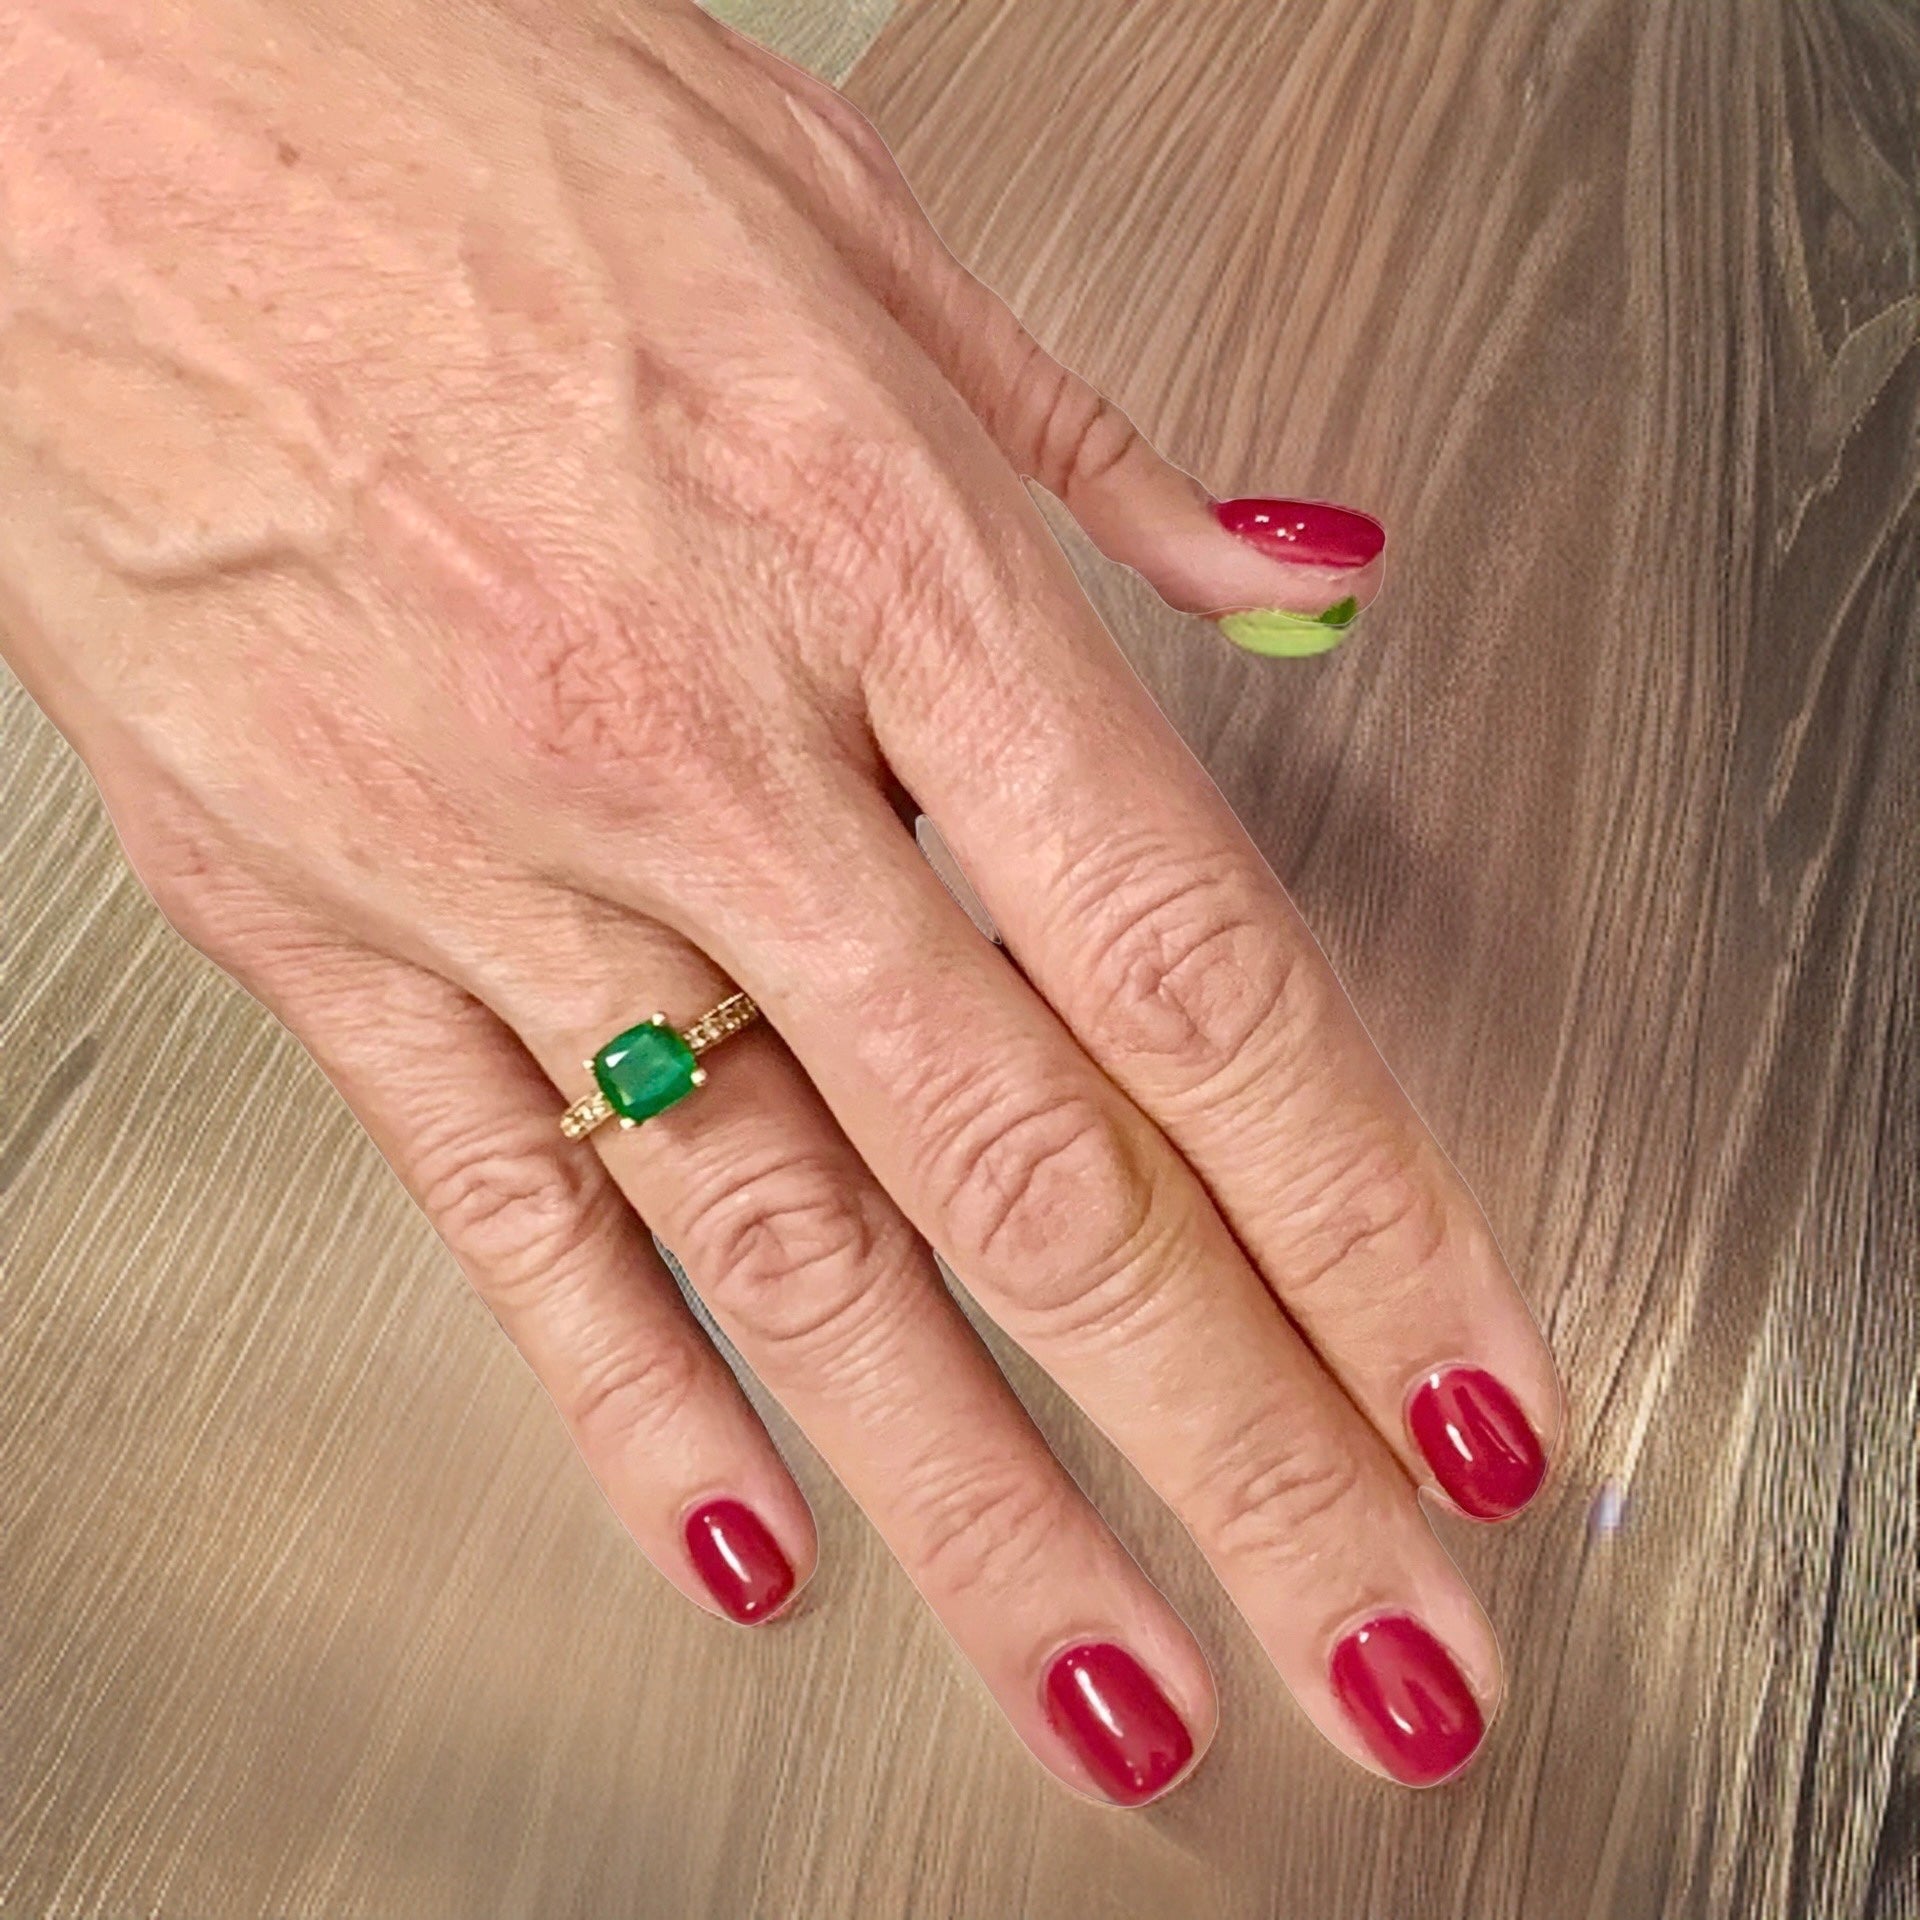 Diamond Emerald Ring 14k Gold 2.01 TCW Women Certified $3,950 914185 - Certified Fine Jewelry